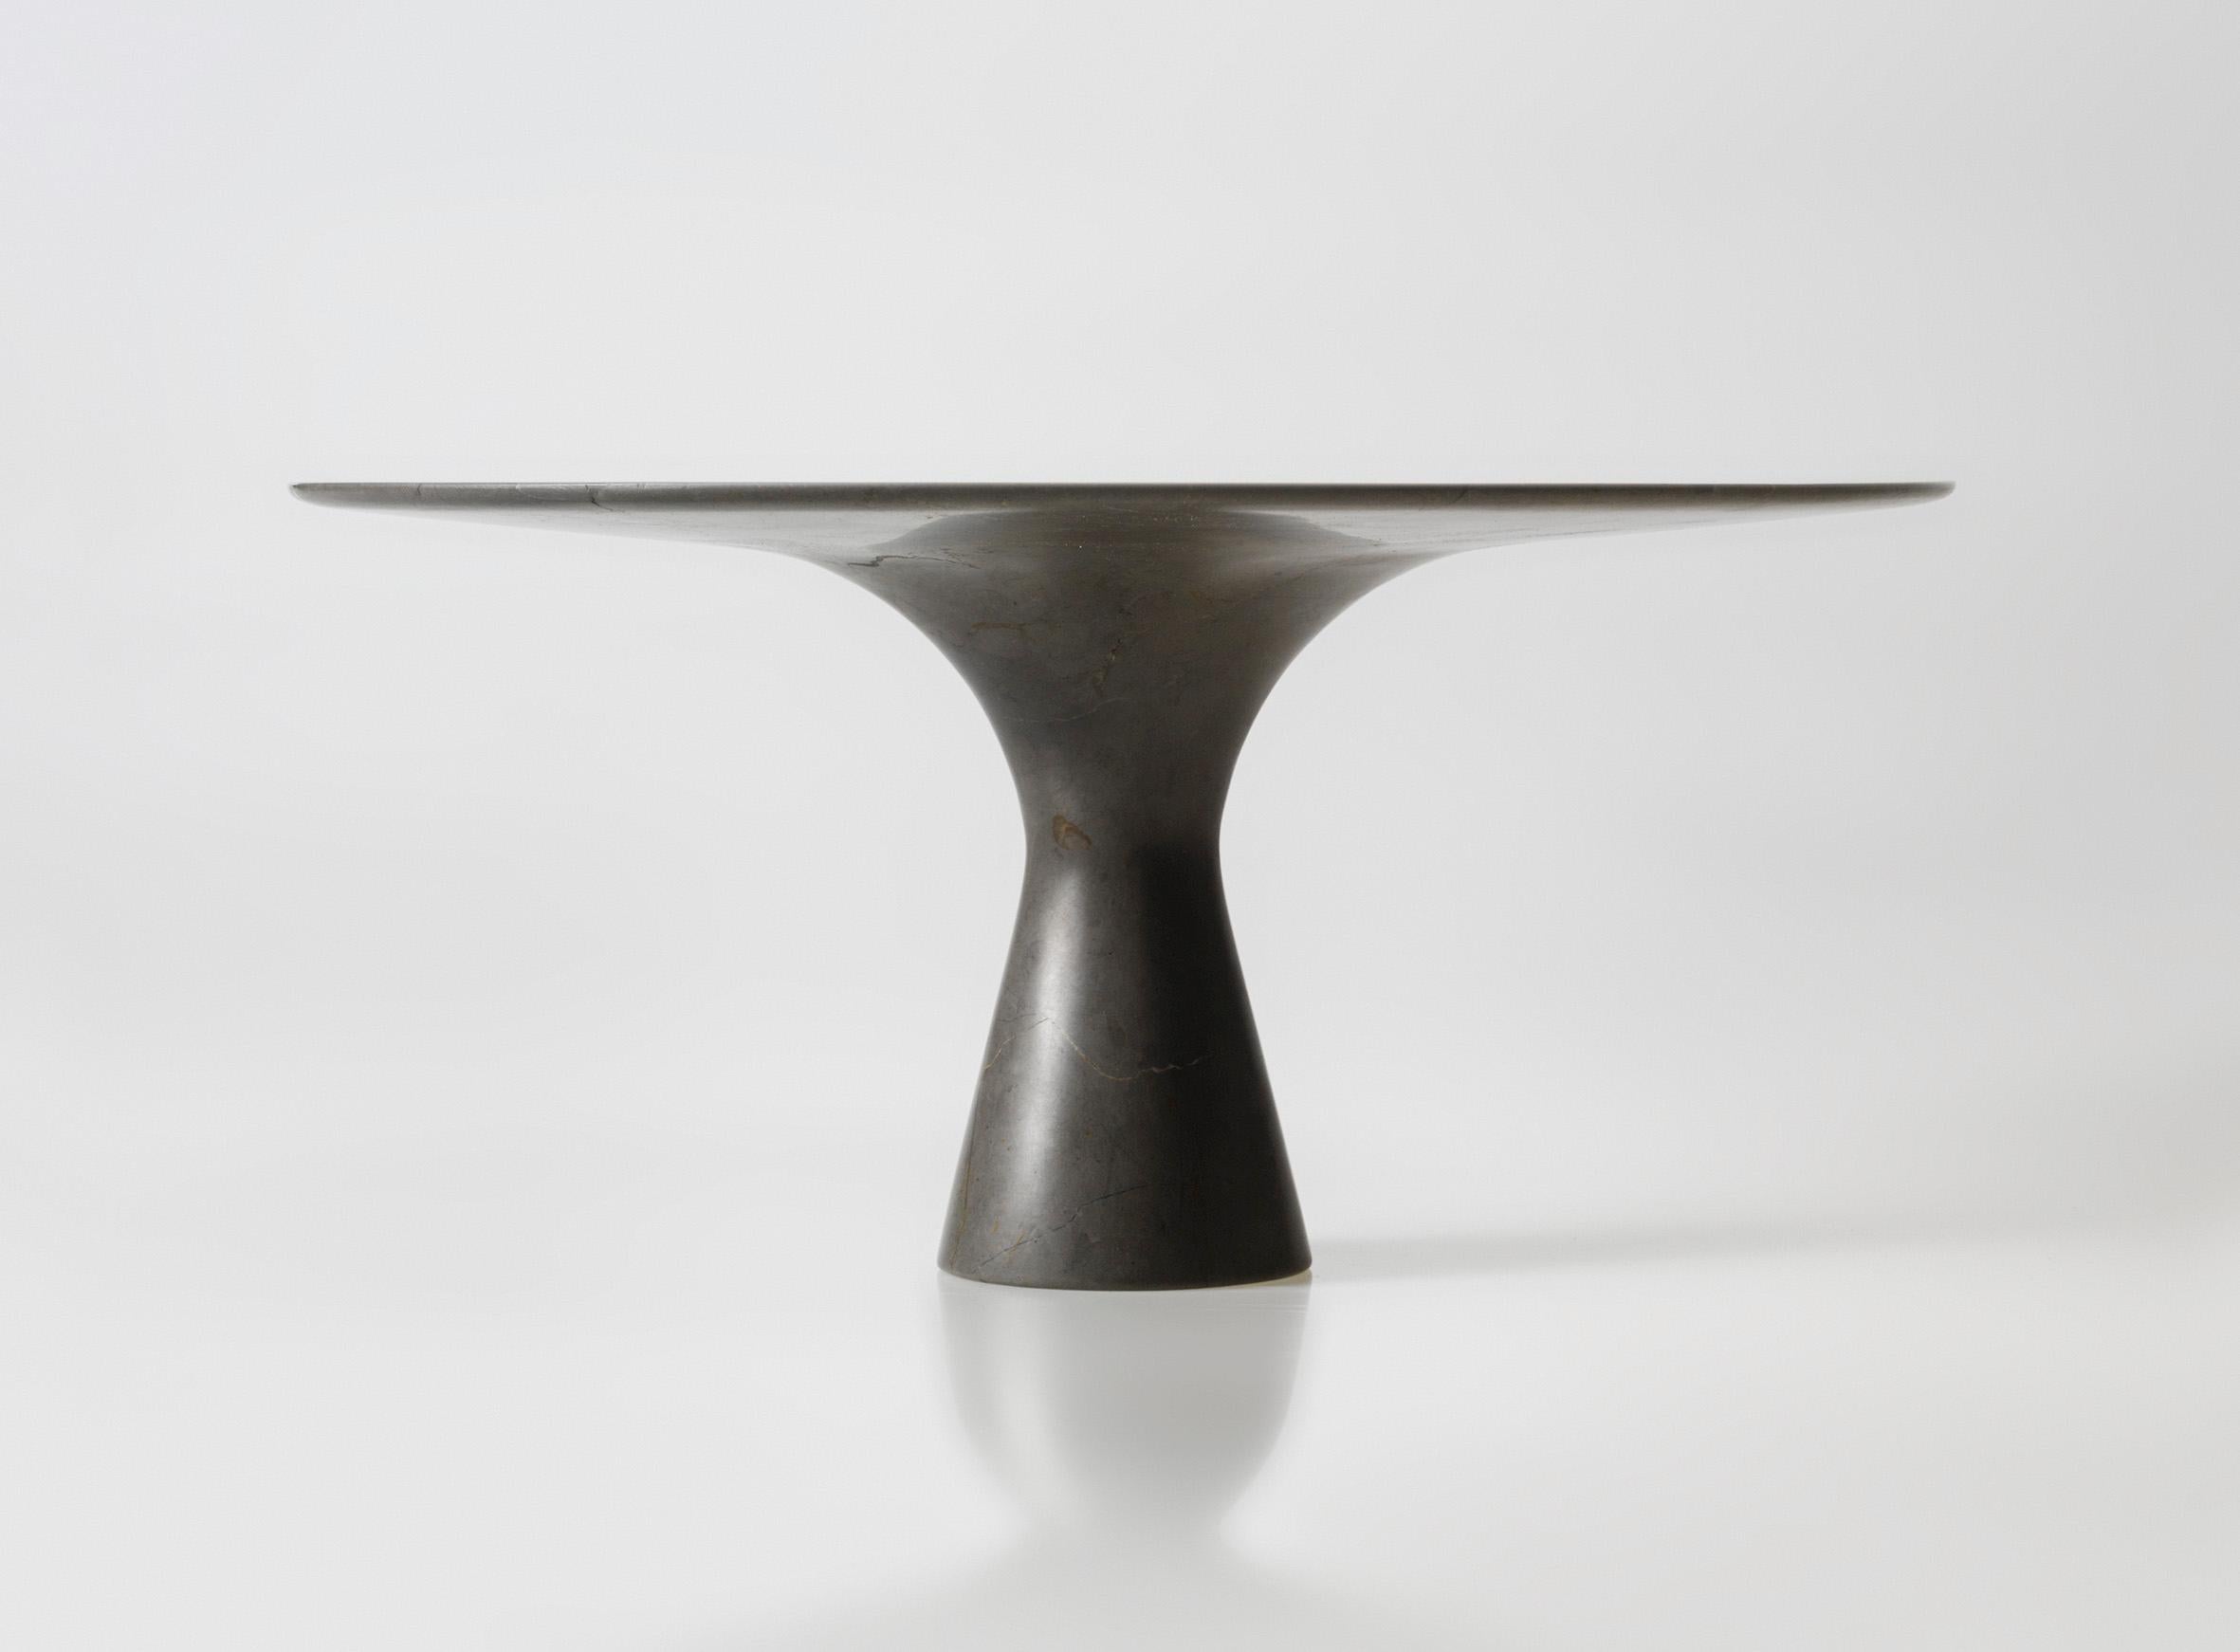 Grafite Raffinierter Ovaler Tisch aus Marmor 210/75
Abmessungen: 210 x 135 x 75 cm
MATERIALIEN: Grafite.

Angelo ist die Essenz eines runden Tisches aus Naturstein, eine skulpturale Form aus robustem Material mit eleganten Linien und raffinierten